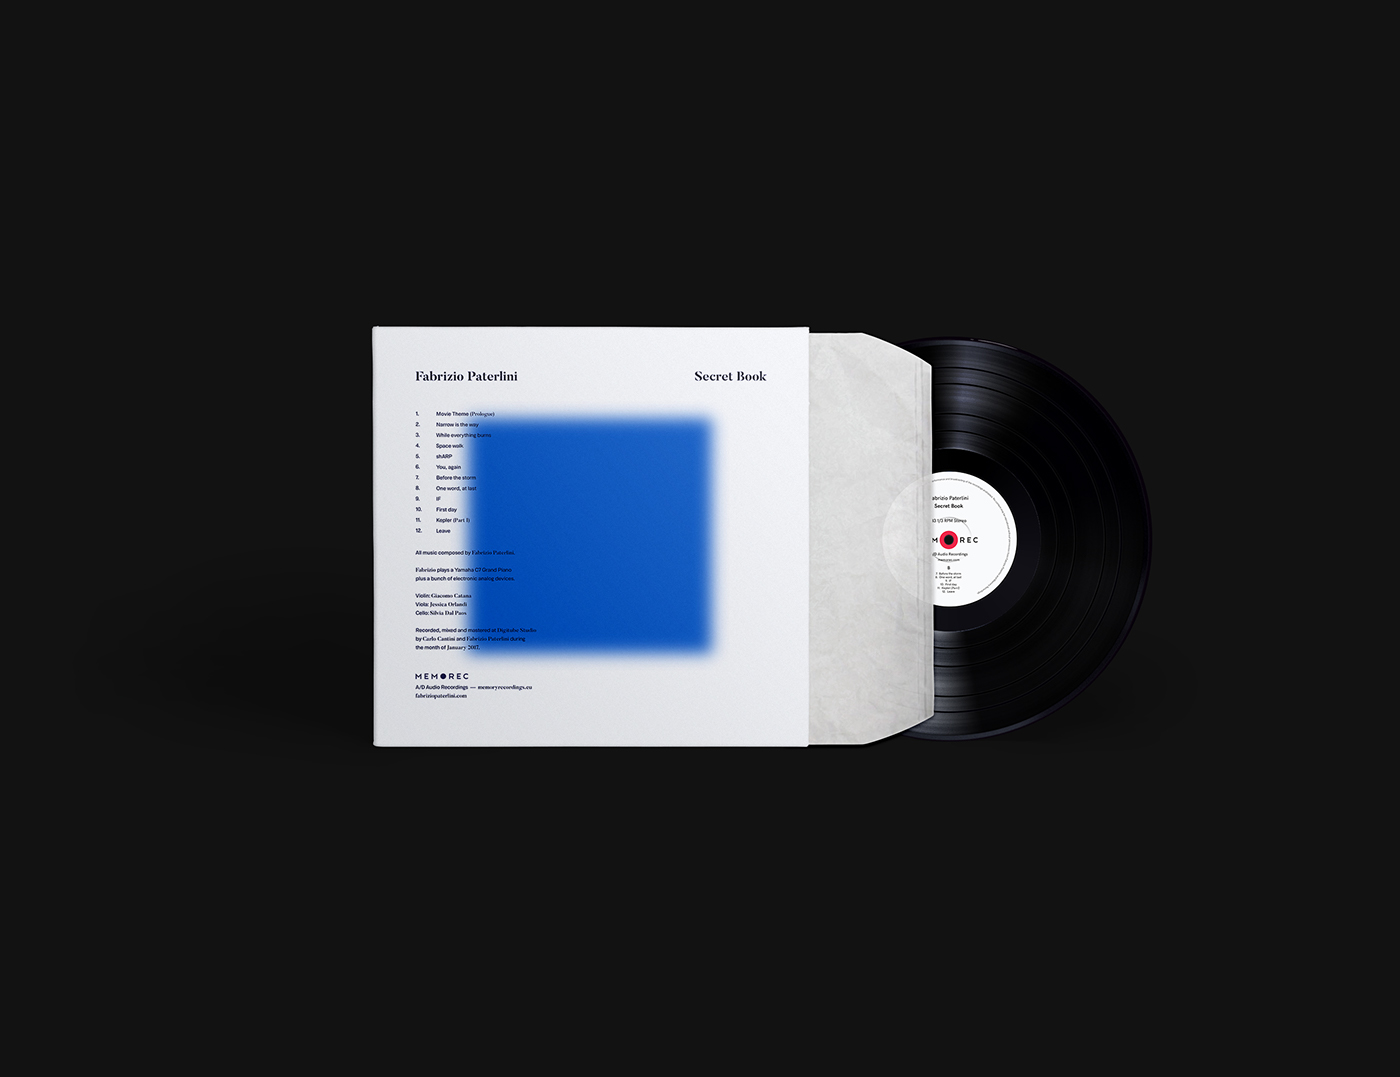 Album cover design music Piano vinyl CGI cinema 4d visual design aesthetic